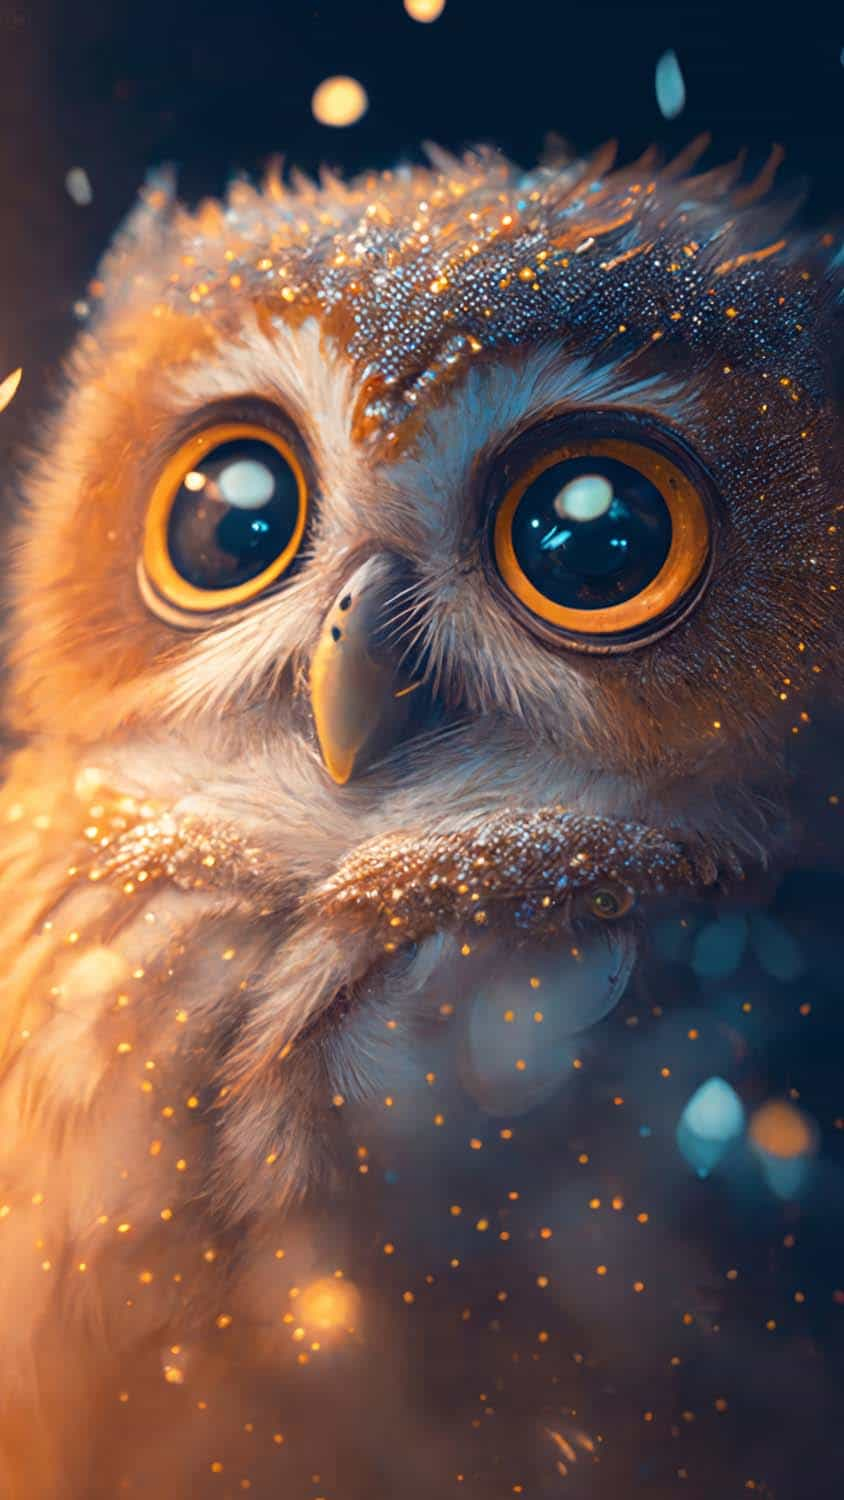 48 Owl iPhone Wallpaper  WallpaperSafari